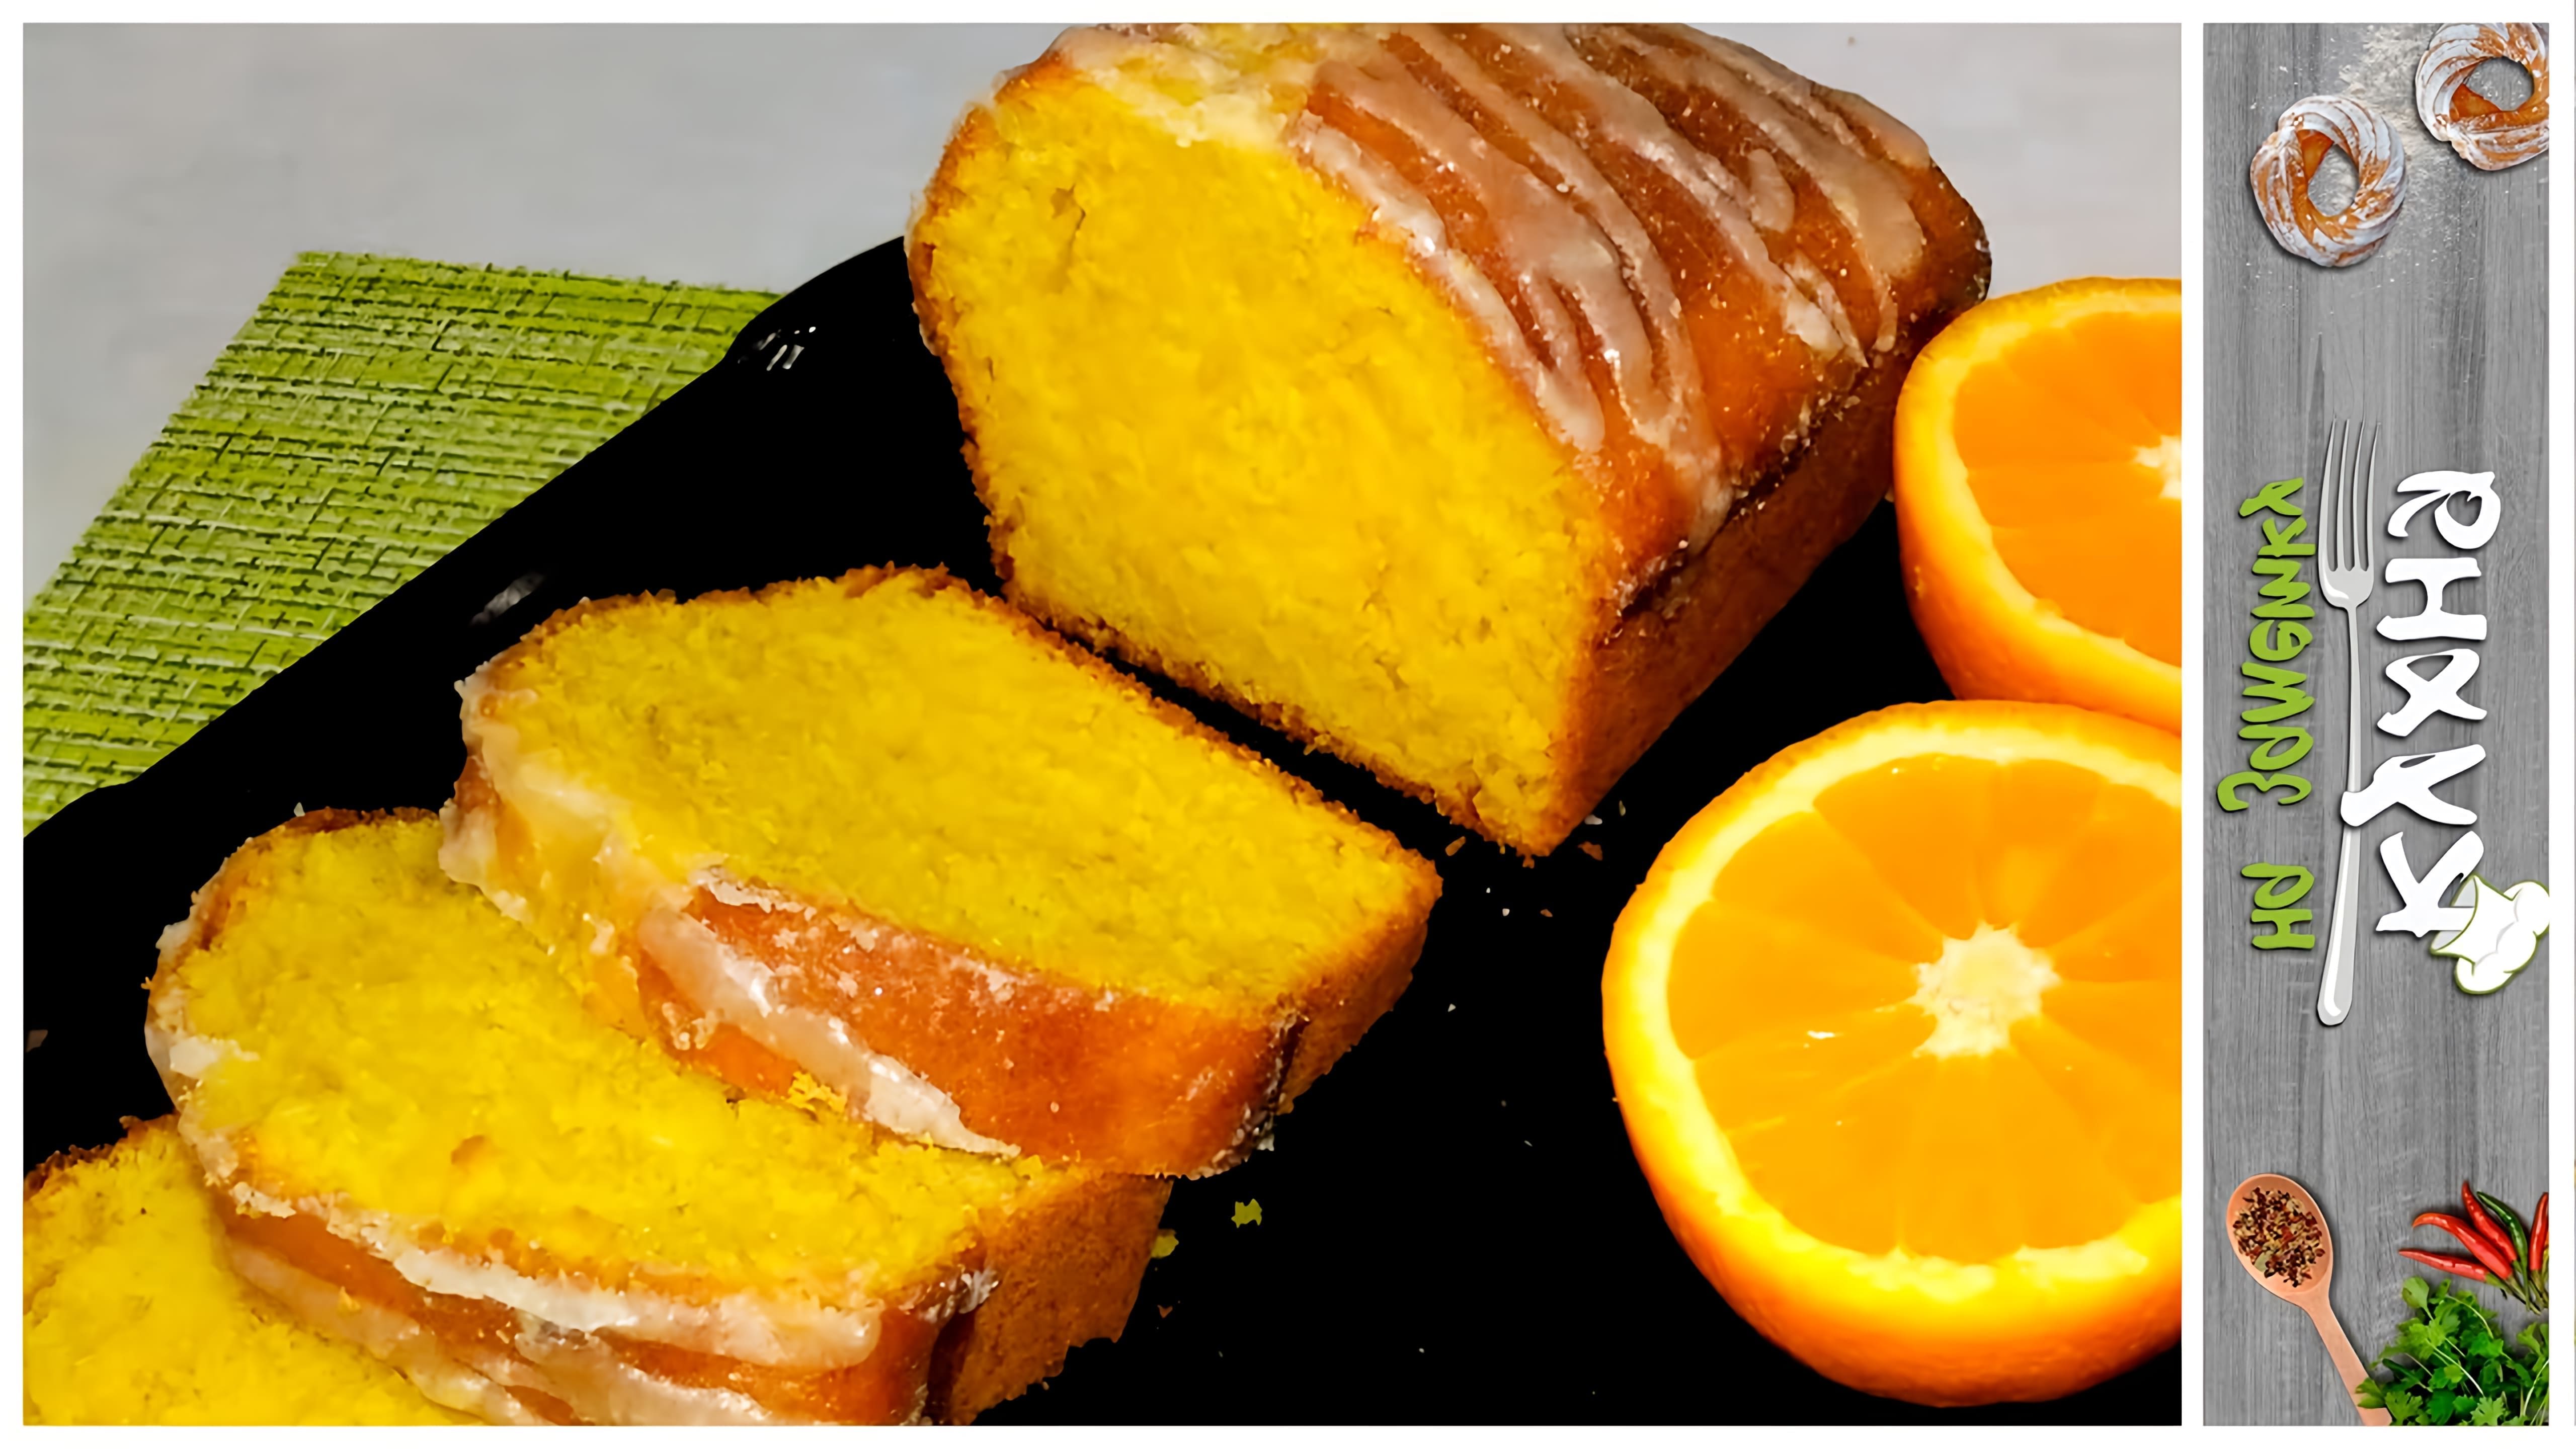 Яркий АПЕЛЬСИНОВЫЙ КЕКС | Нежный, сочный и ароматный

В этом видео-ролике вы увидите, как приготовить яркий и ароматный апельсиновый кекс